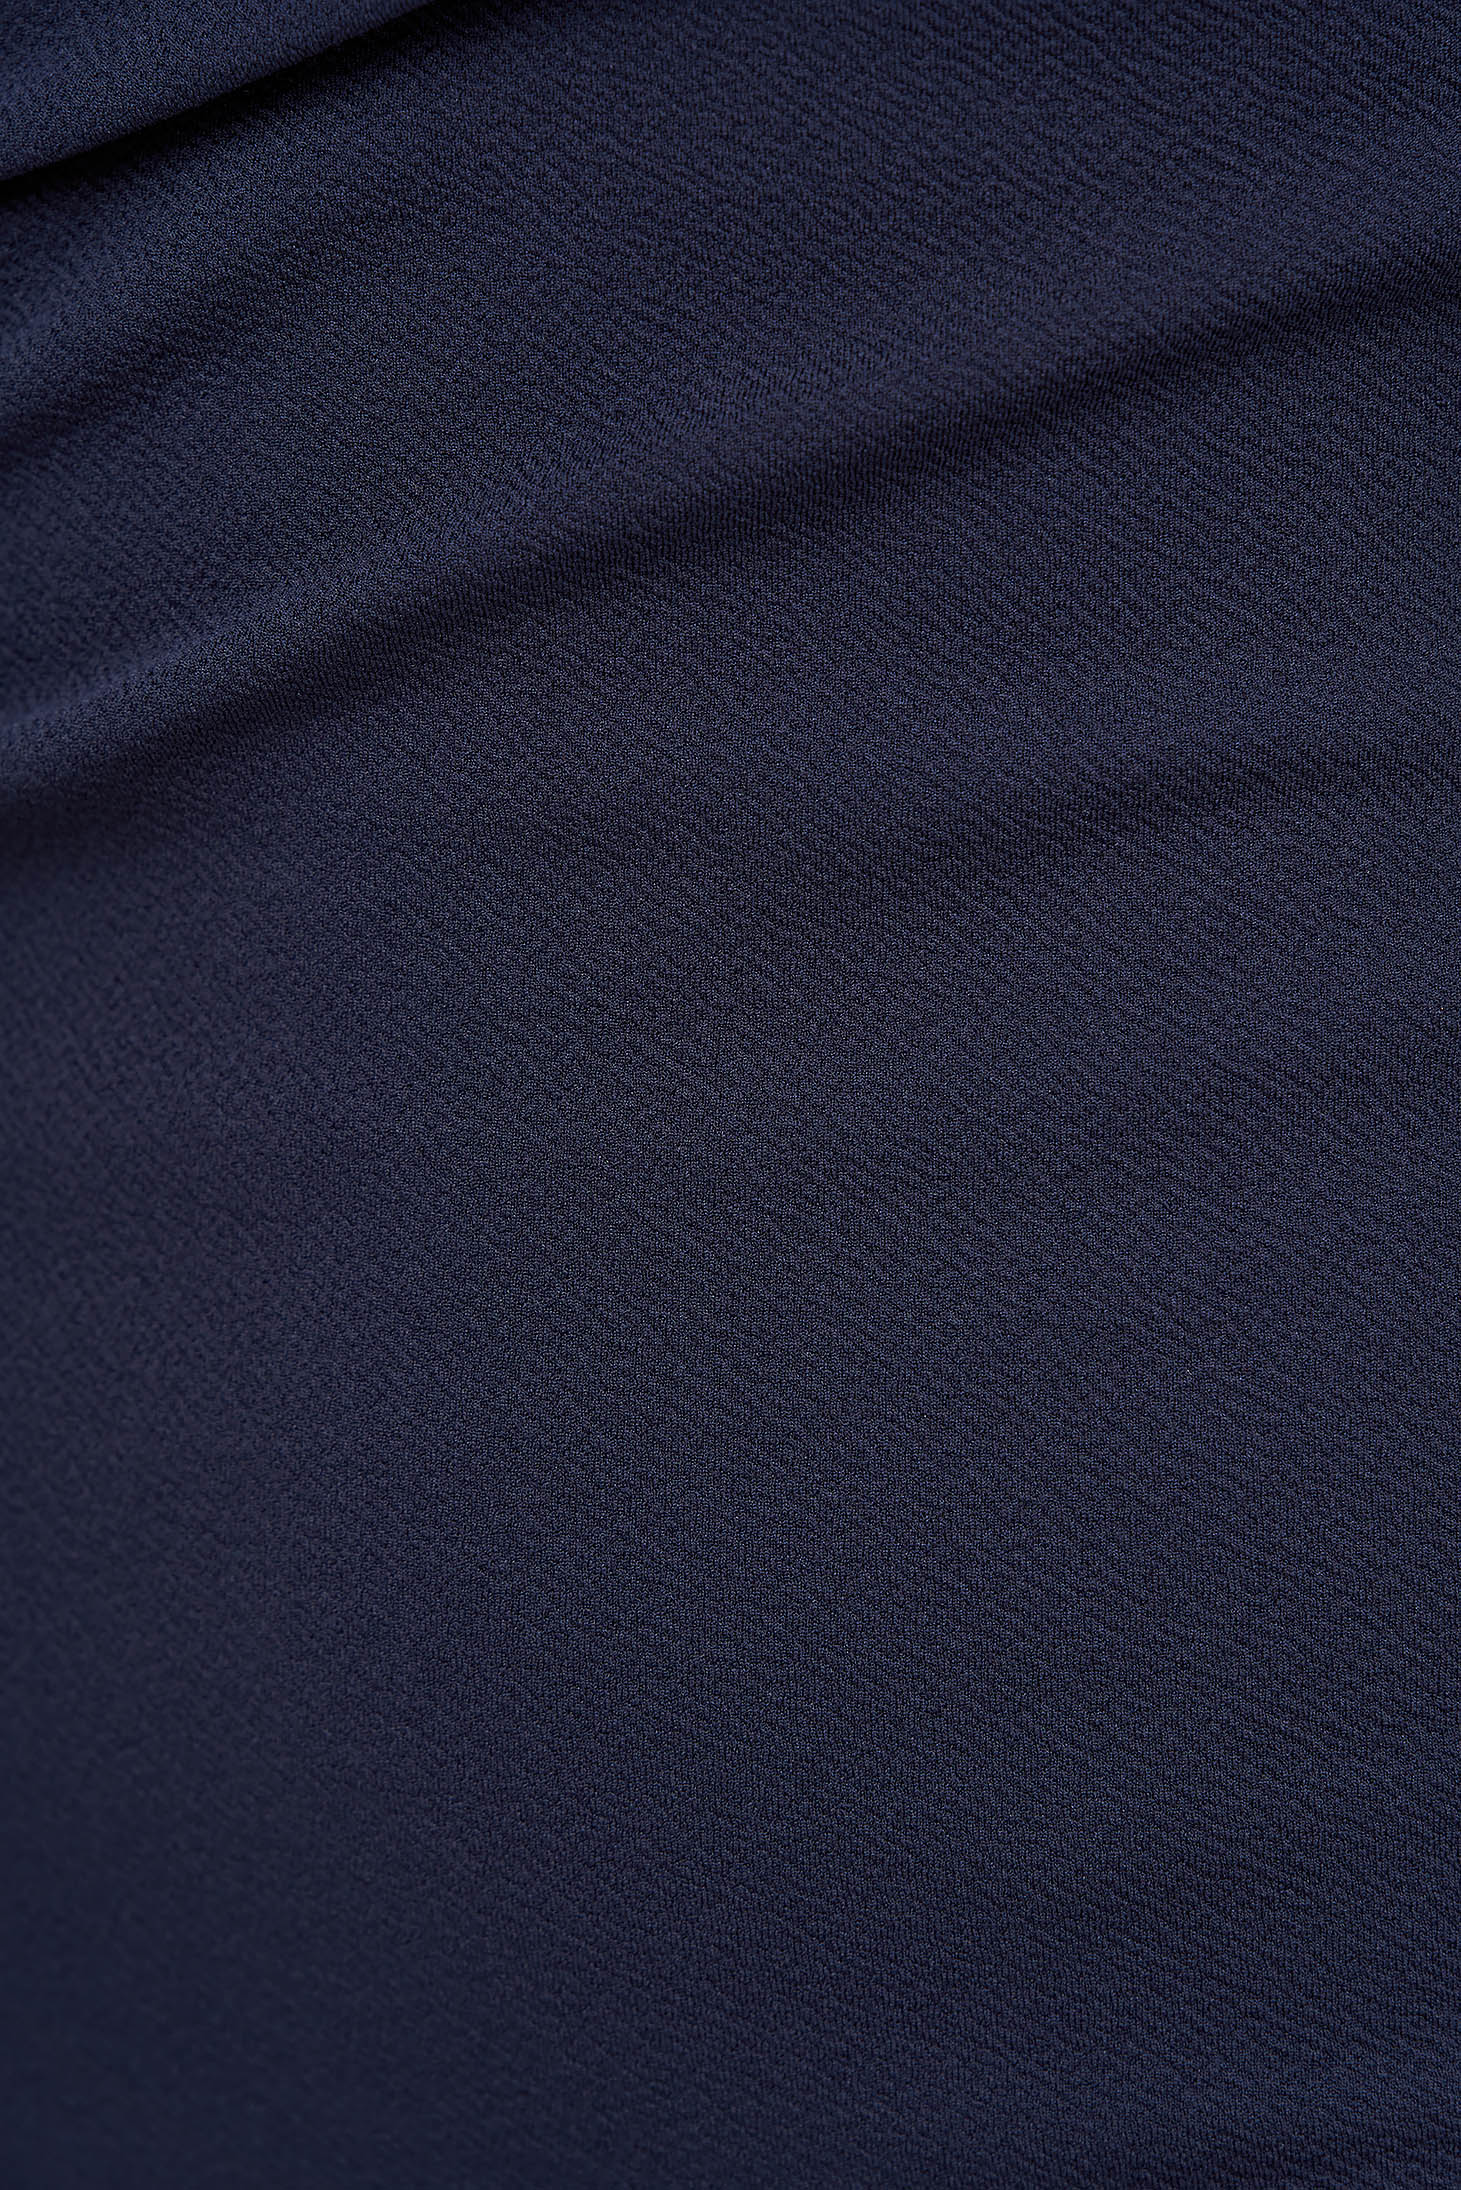 Midi ceruza texturált krepp ruha - sötétkék, átlapolt dekoltázzsal - StarShinerS 5 - StarShinerS.hu